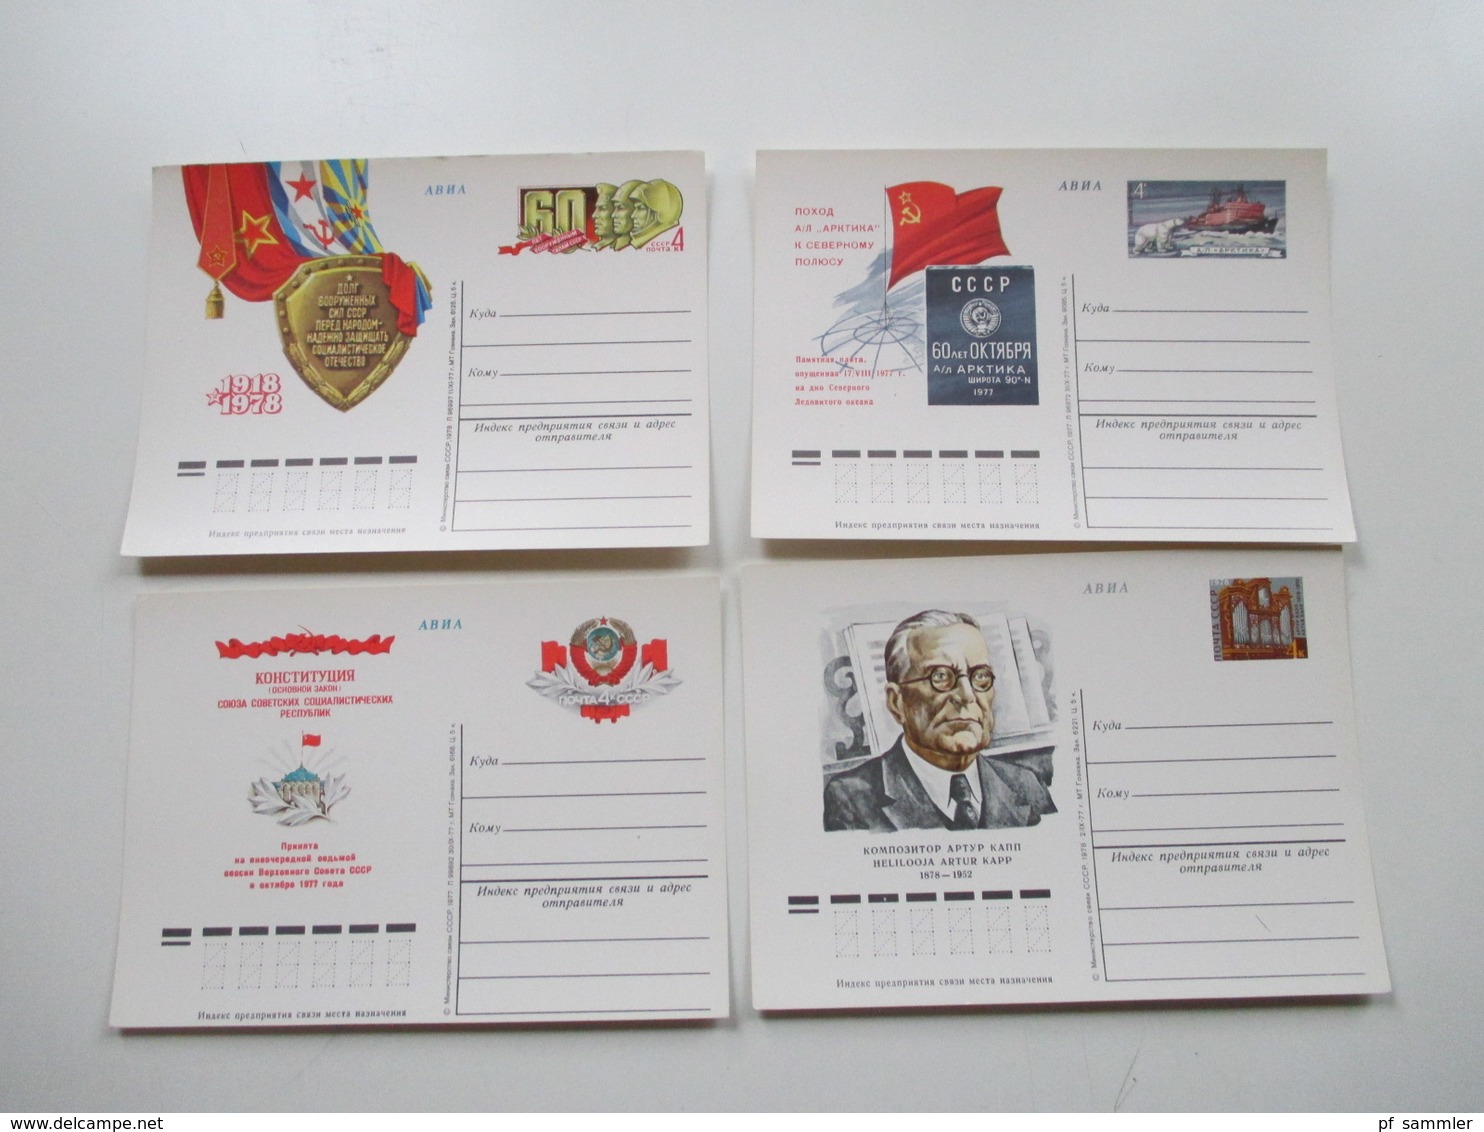 Russland / UDSSR Posten GA Karten / Umschläge ca. 1970er Jahre  - 2001 insgesamt 240 Stück ungebraucht / SST Lagerposten